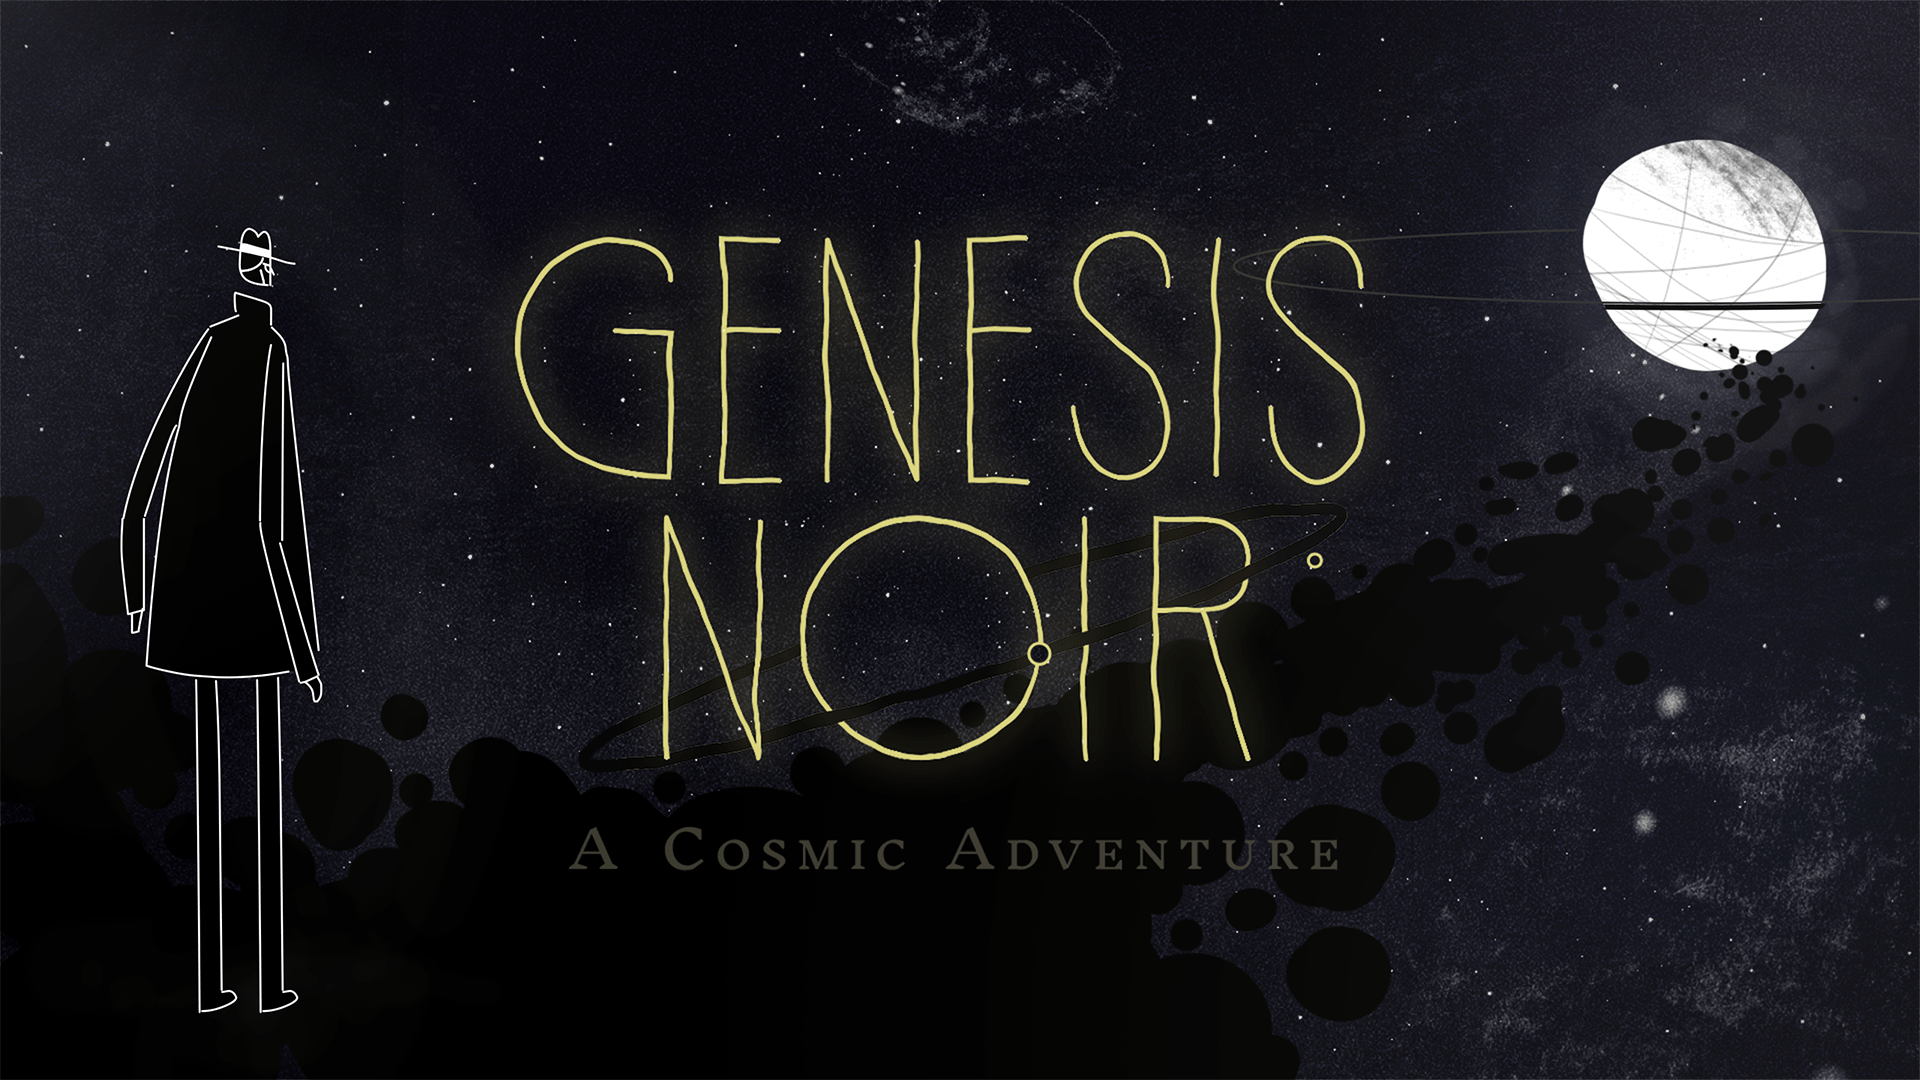 Motionographer Behind the making of Genesis Noir